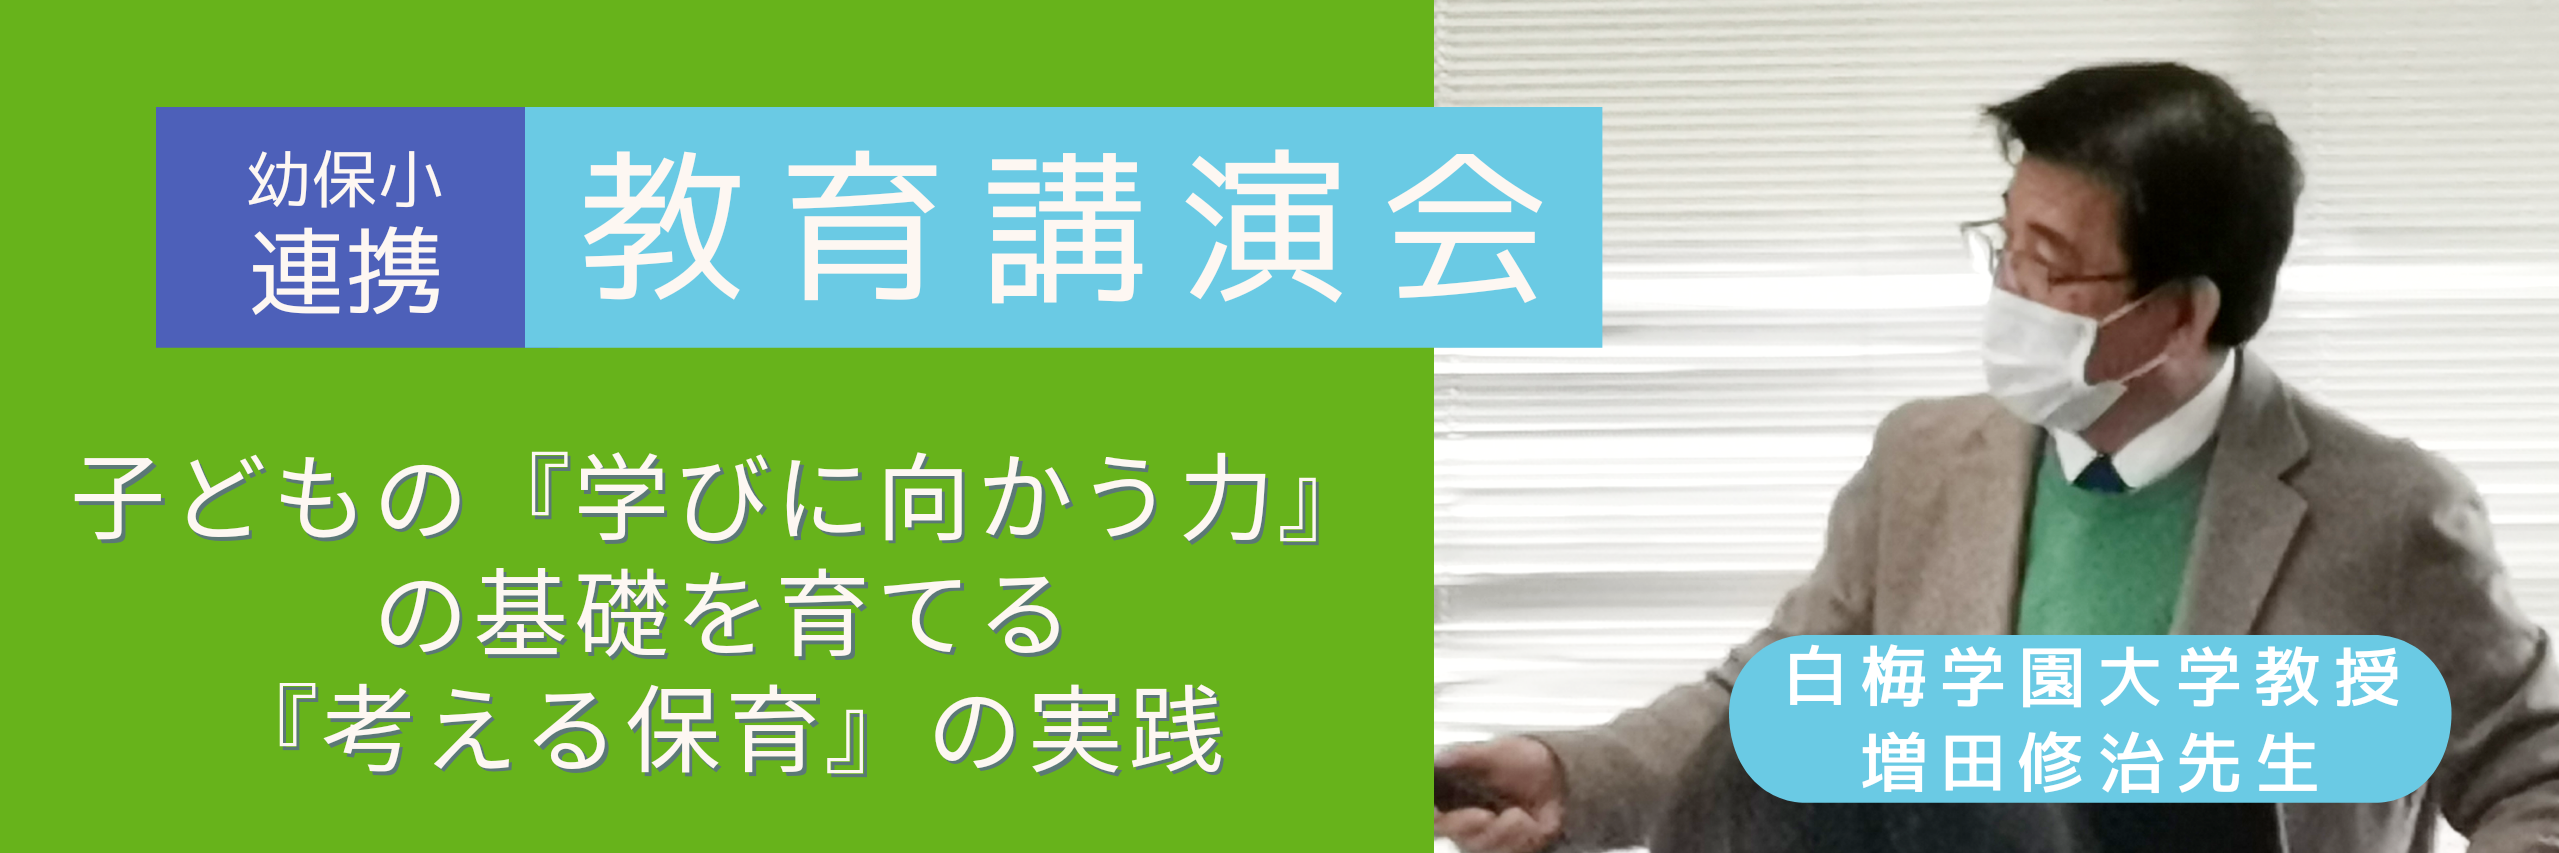 日本標準教育研究所が開催した幼保小連携教育講演会